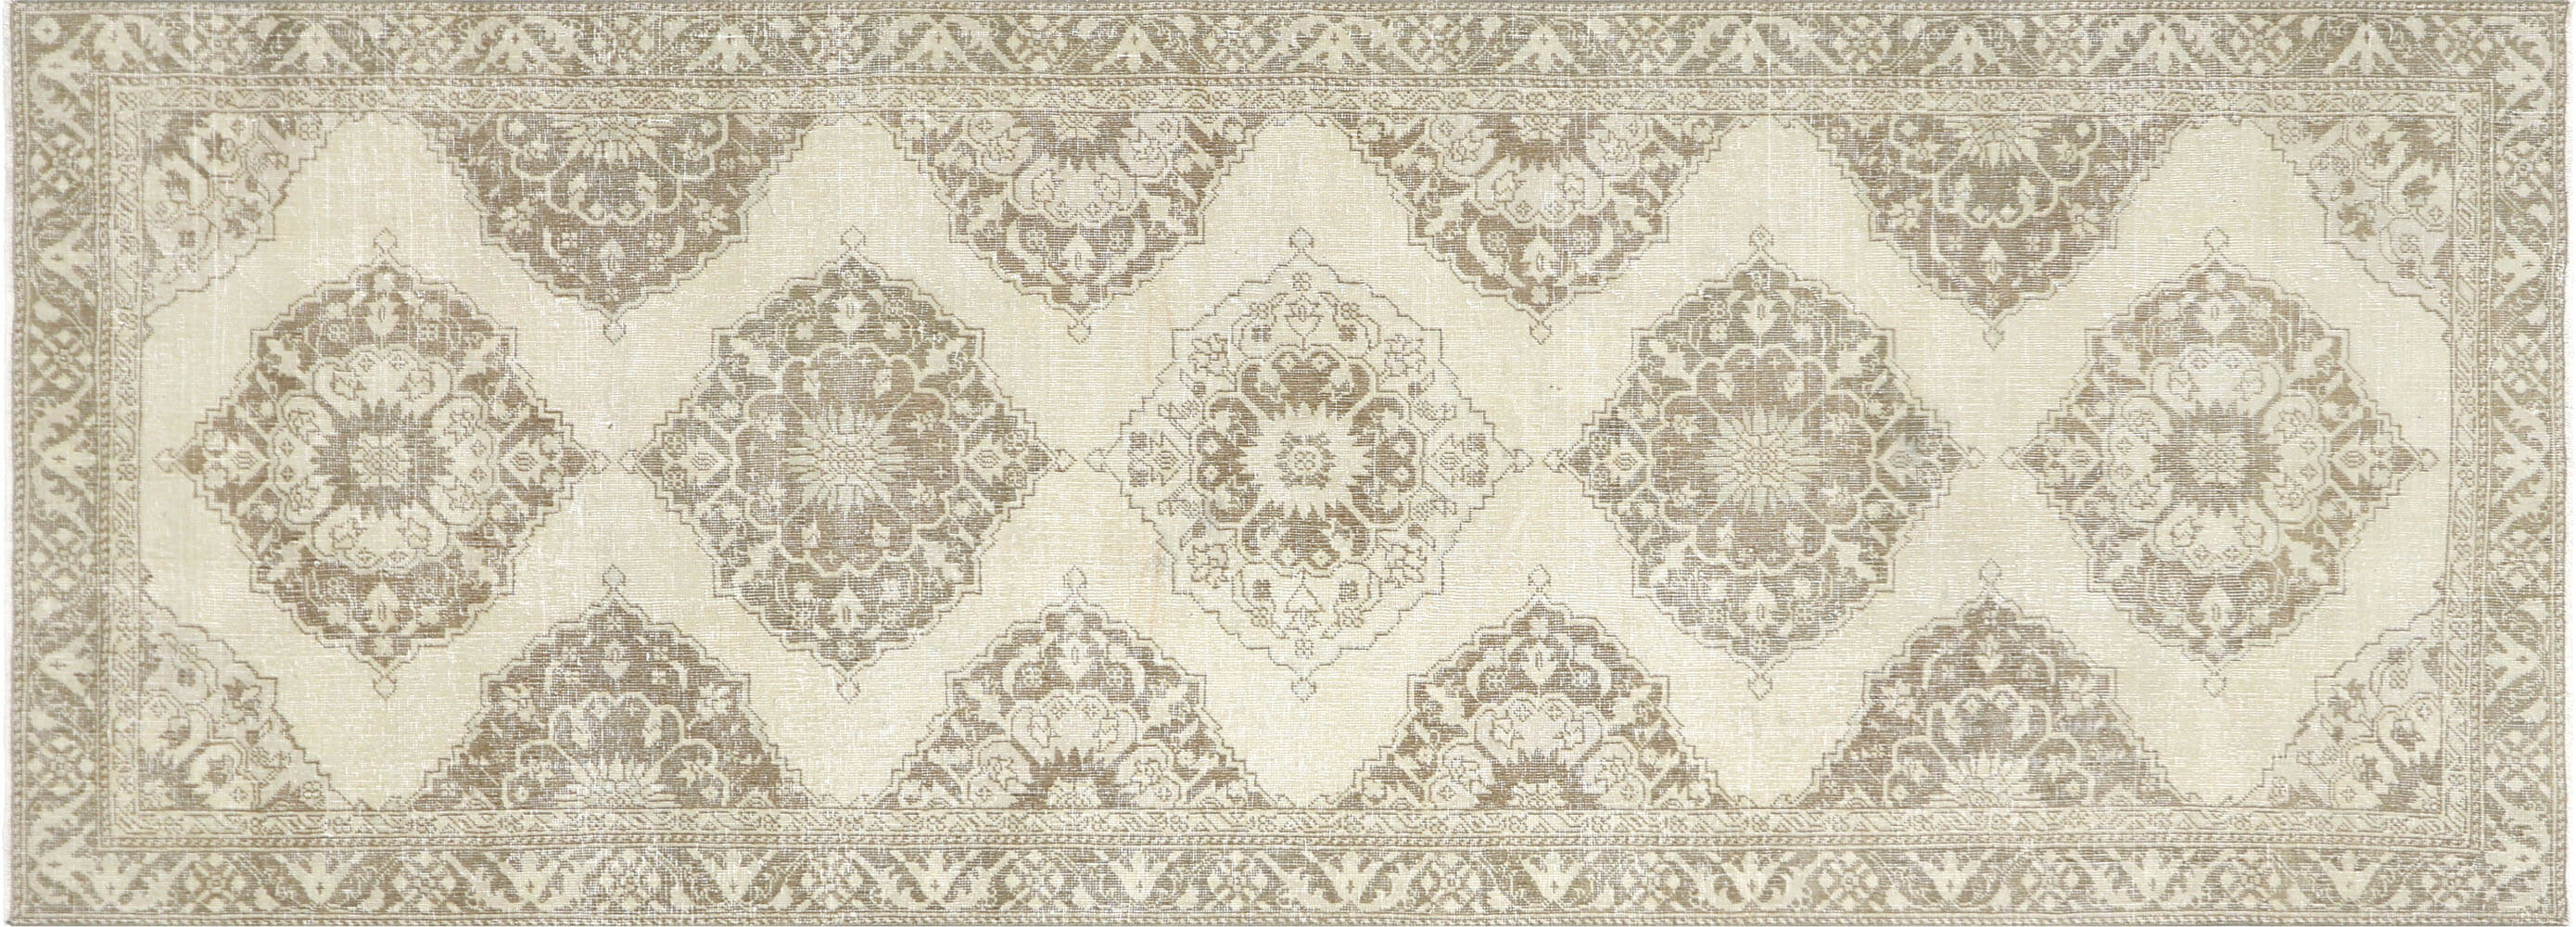 Vintage Turkish Oushak Carpet - 4'7" x 12'7"